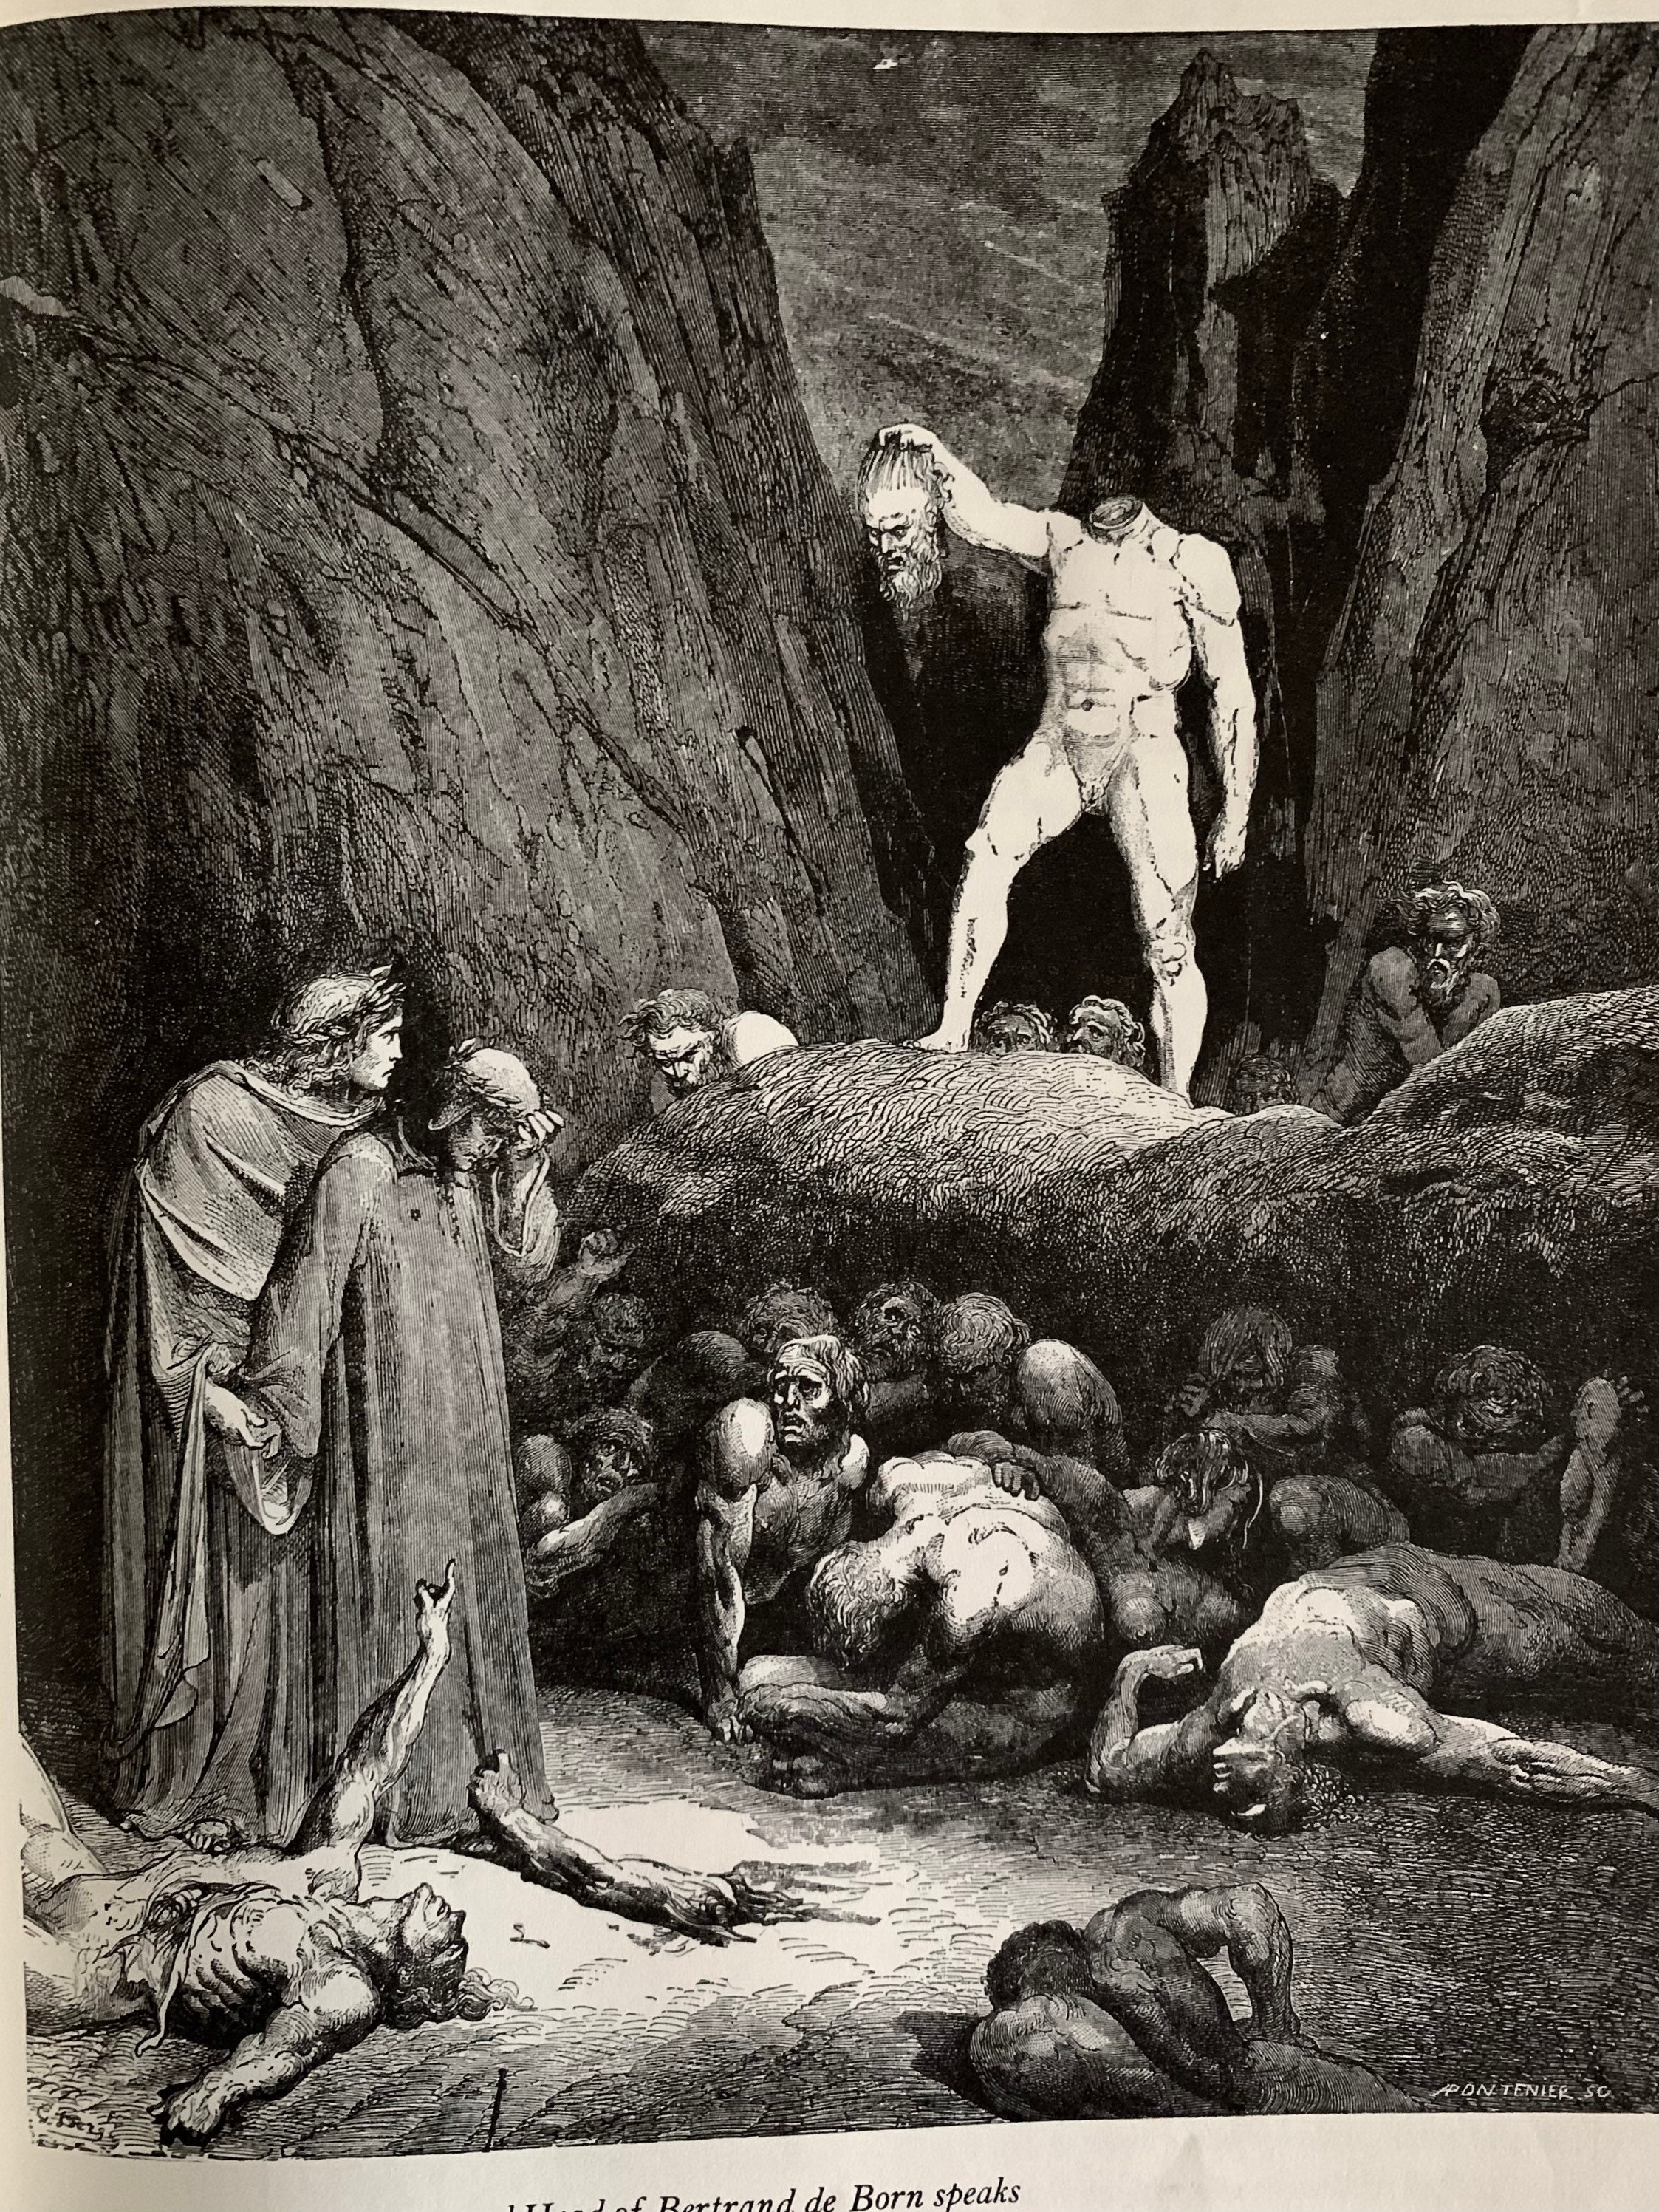 Diabos, ilustração de &39;The Divine Comedy&39; (Inferno) por Dante  Alighieri (1265-1321) Paris, publicado em 1885